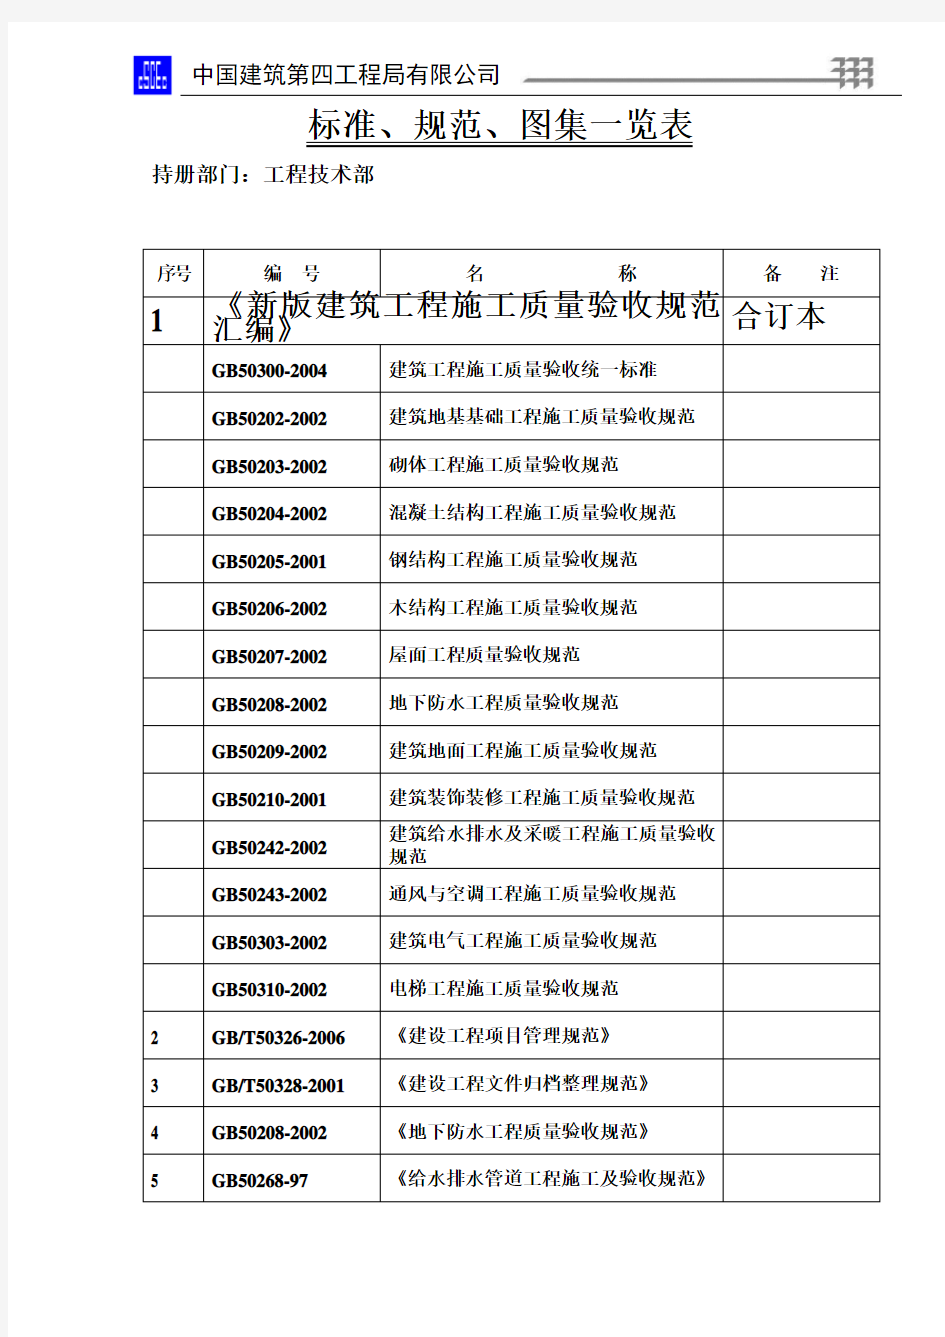 标准、规范、图集一览表(中国建筑)